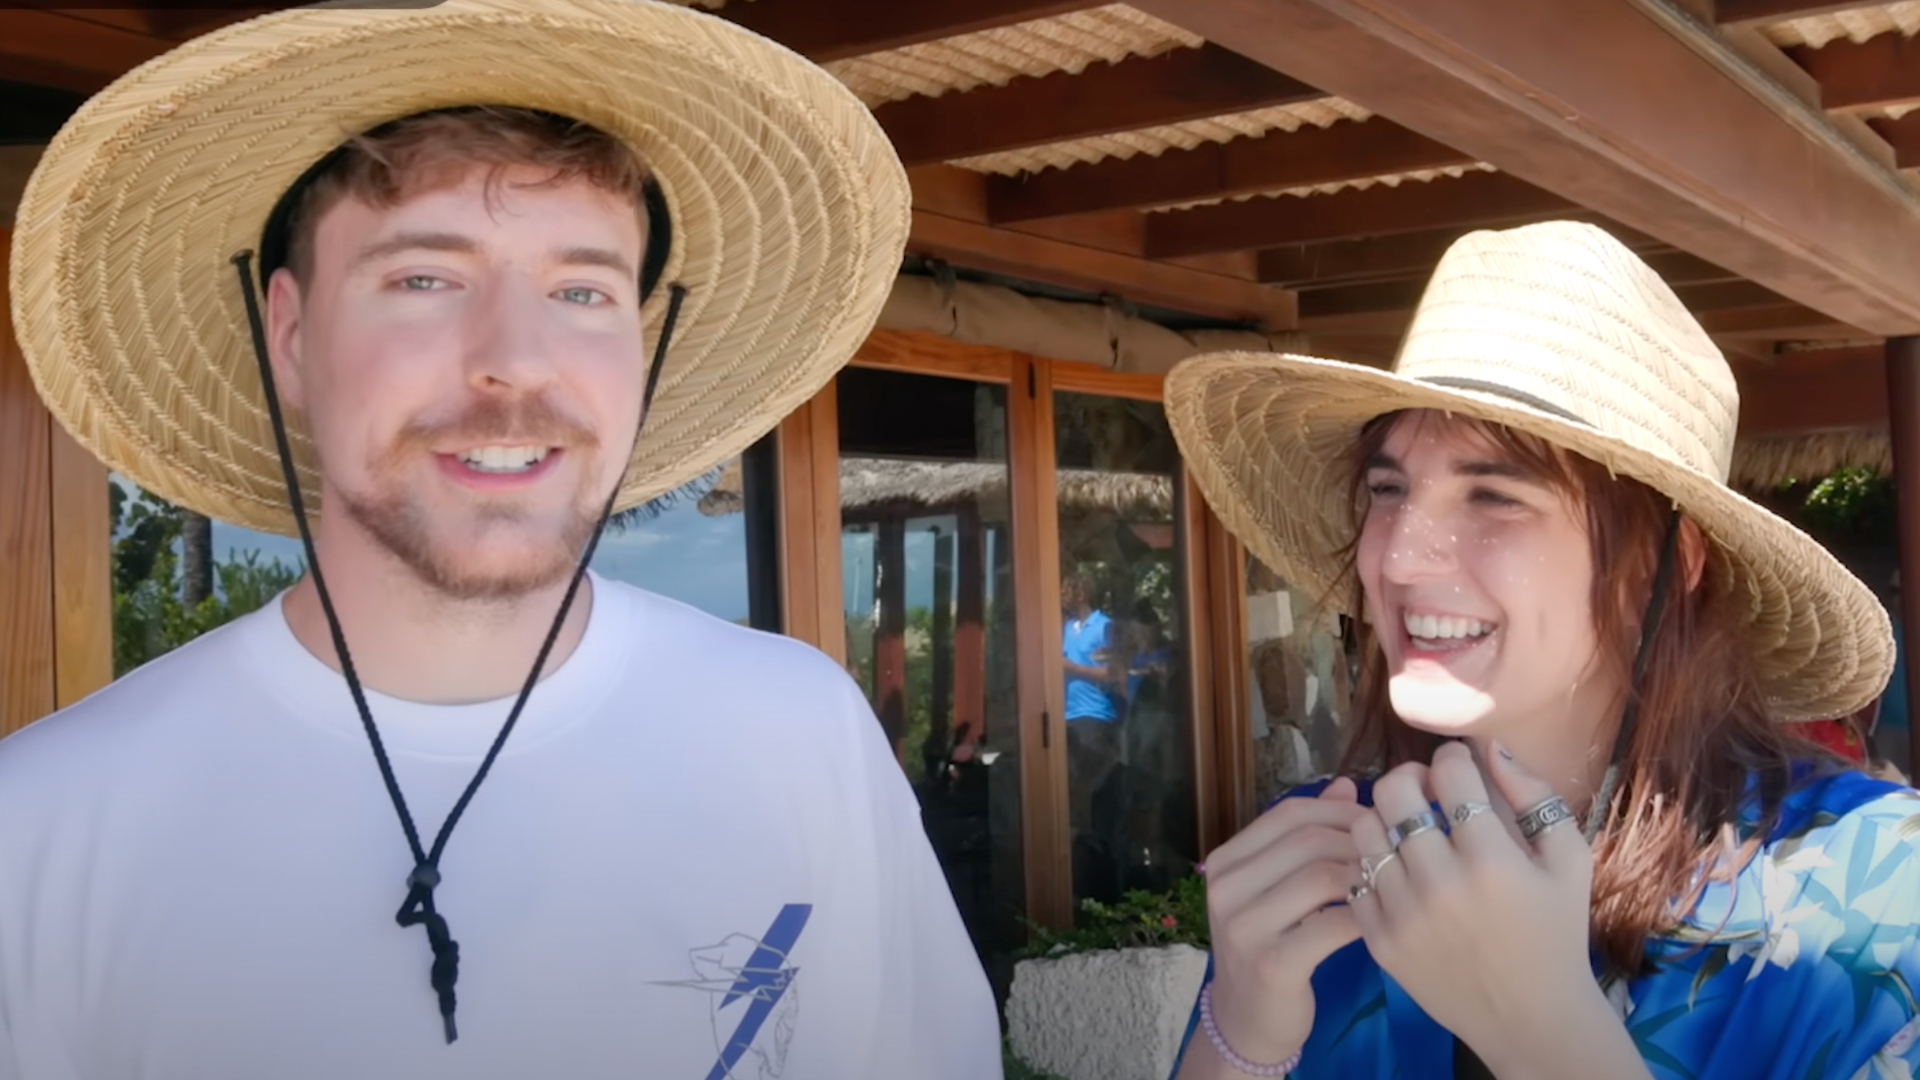 MrBeast in a wide brimmed straw hat next to friend Kris Tyson